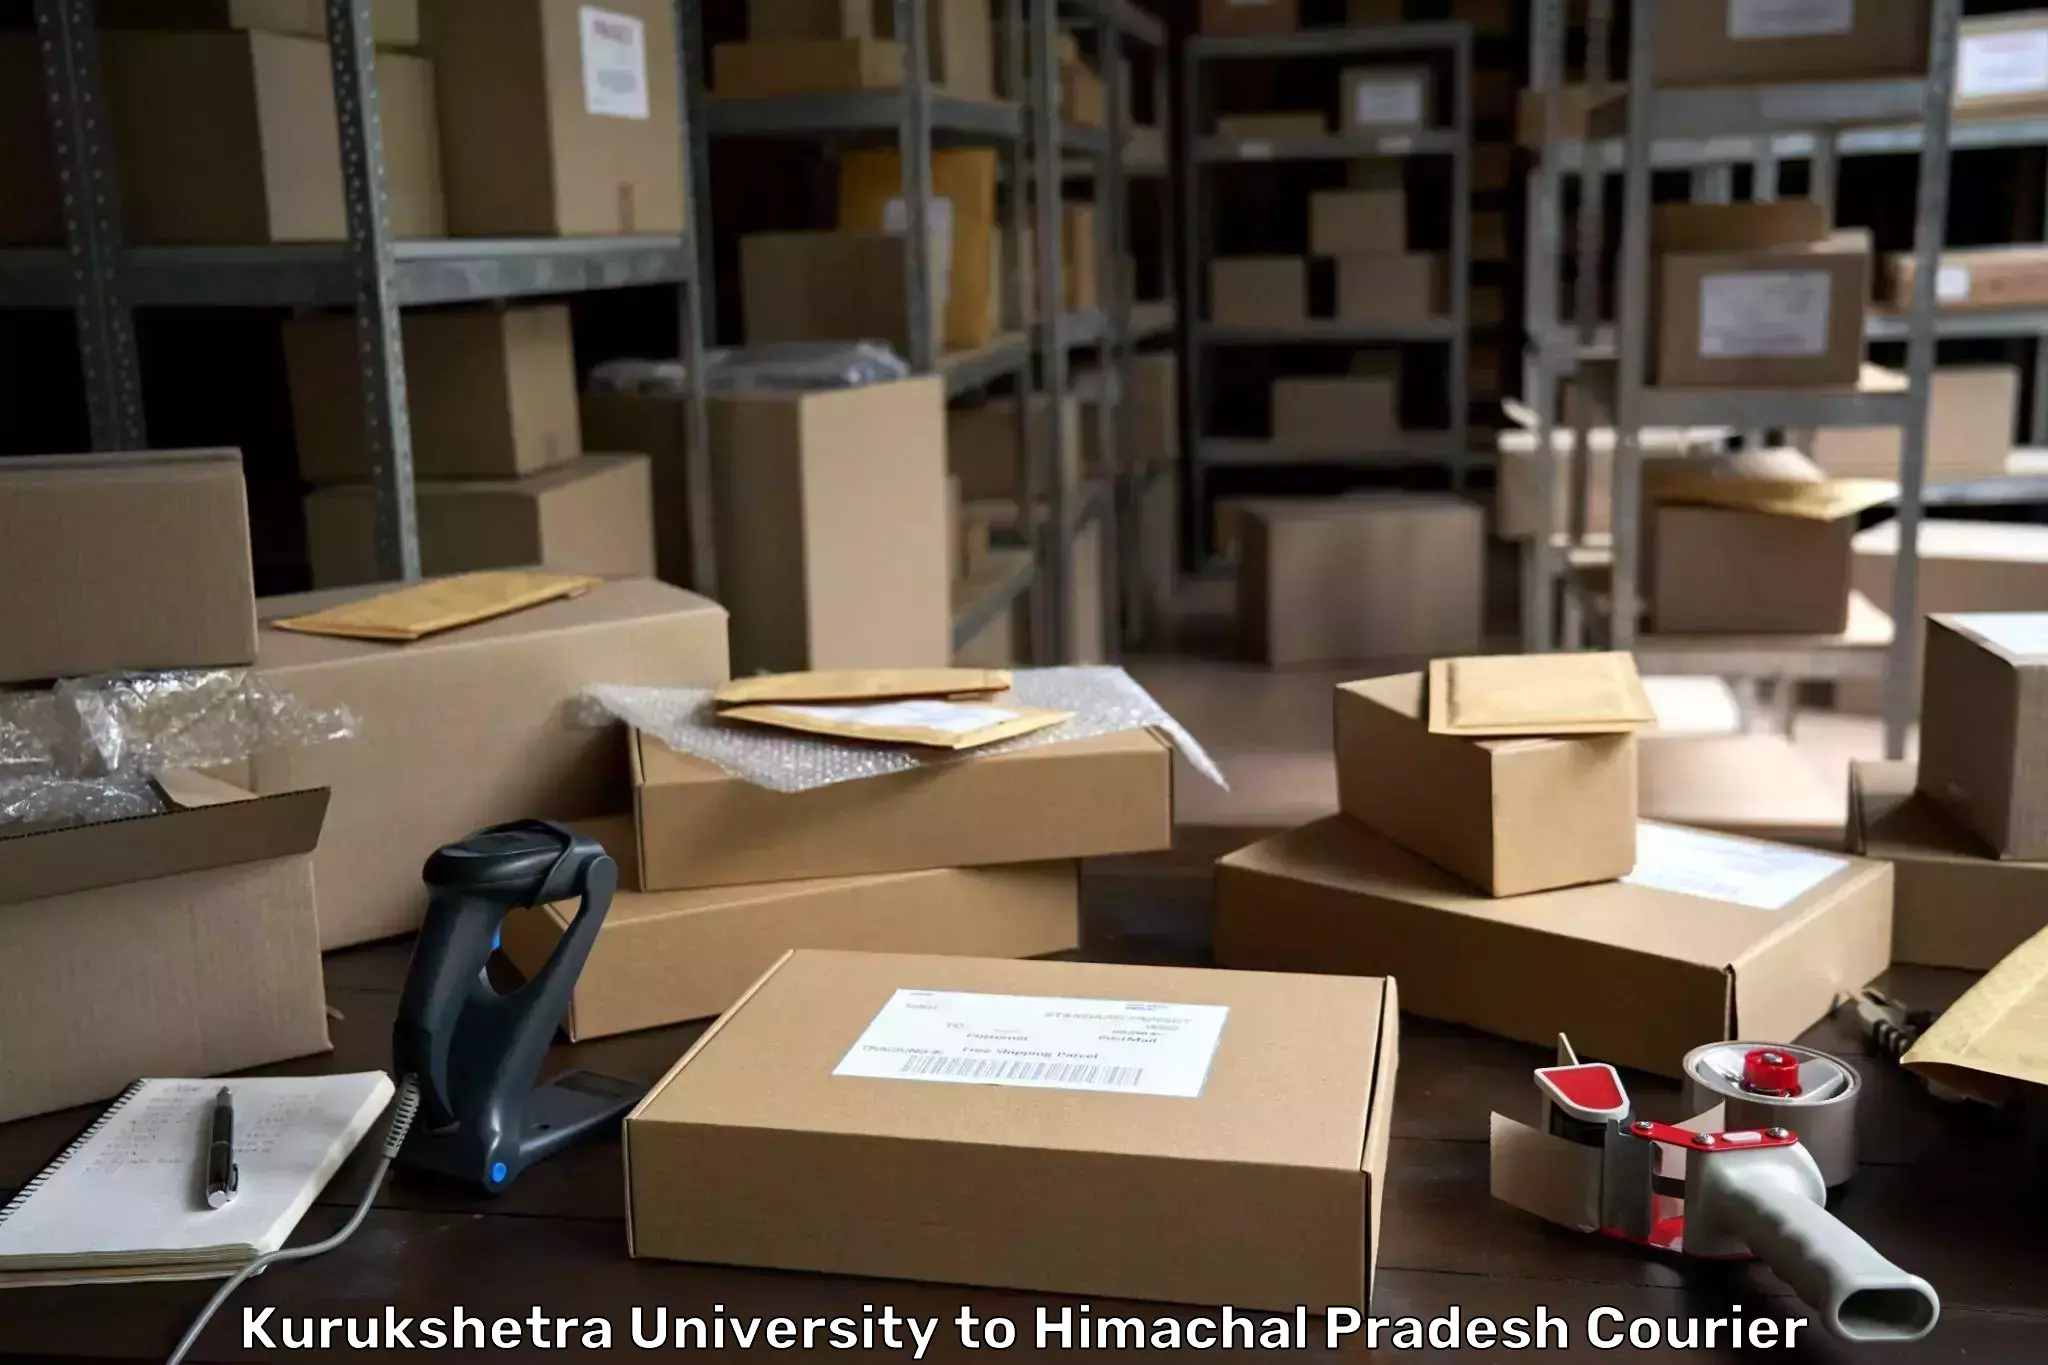 Nationwide shipping capabilities Kurukshetra University to Una Himachal Pradesh